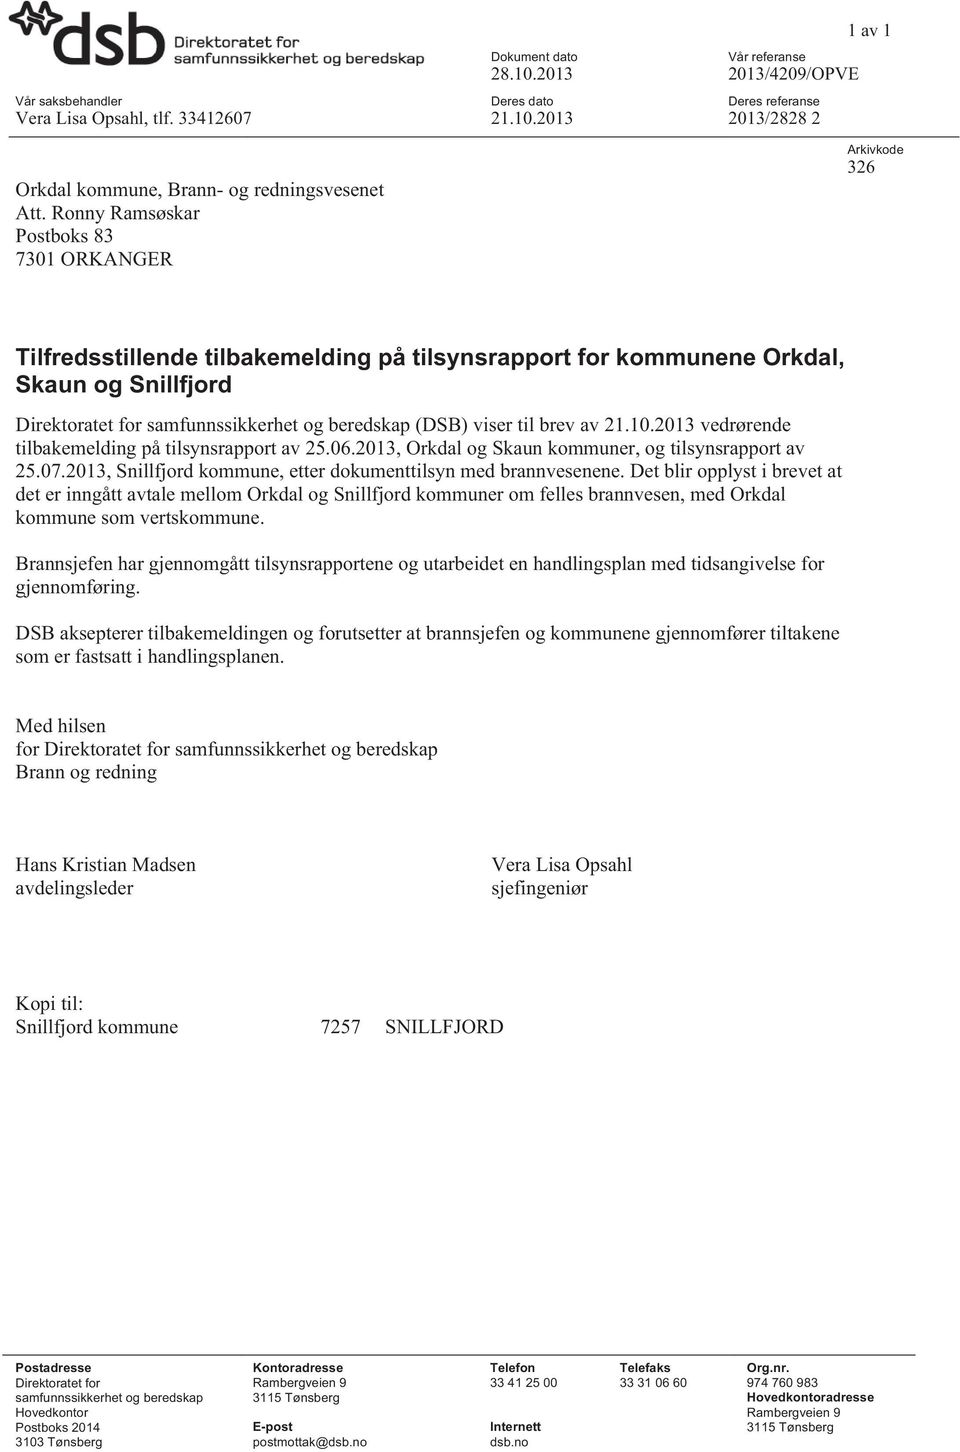 (DSB) viser til brev av 21.10.2013 vedrørende tilbakemelding på tilsynsrapport av 25.06.2013, Orkdal og Skaun kommuner, og tilsynsrapport av 25.07.